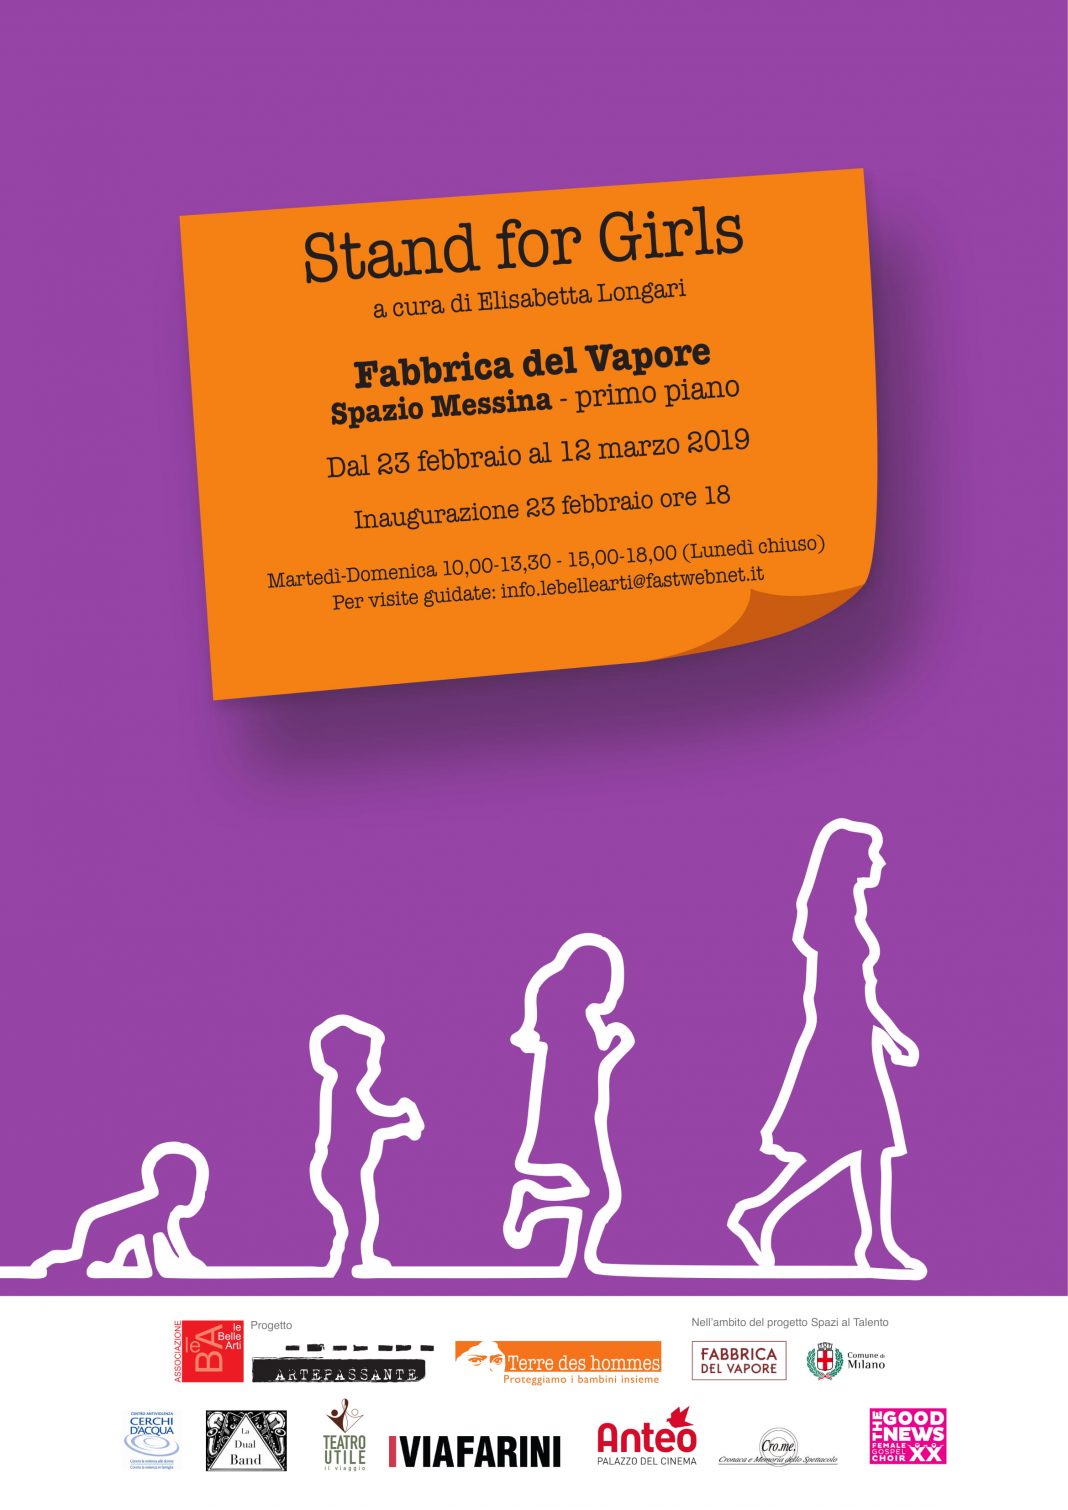 Stand for girlshttps://www.exibart.com/repository/media/eventi/2019/02/stand-for-girls-1068x1510.jpg